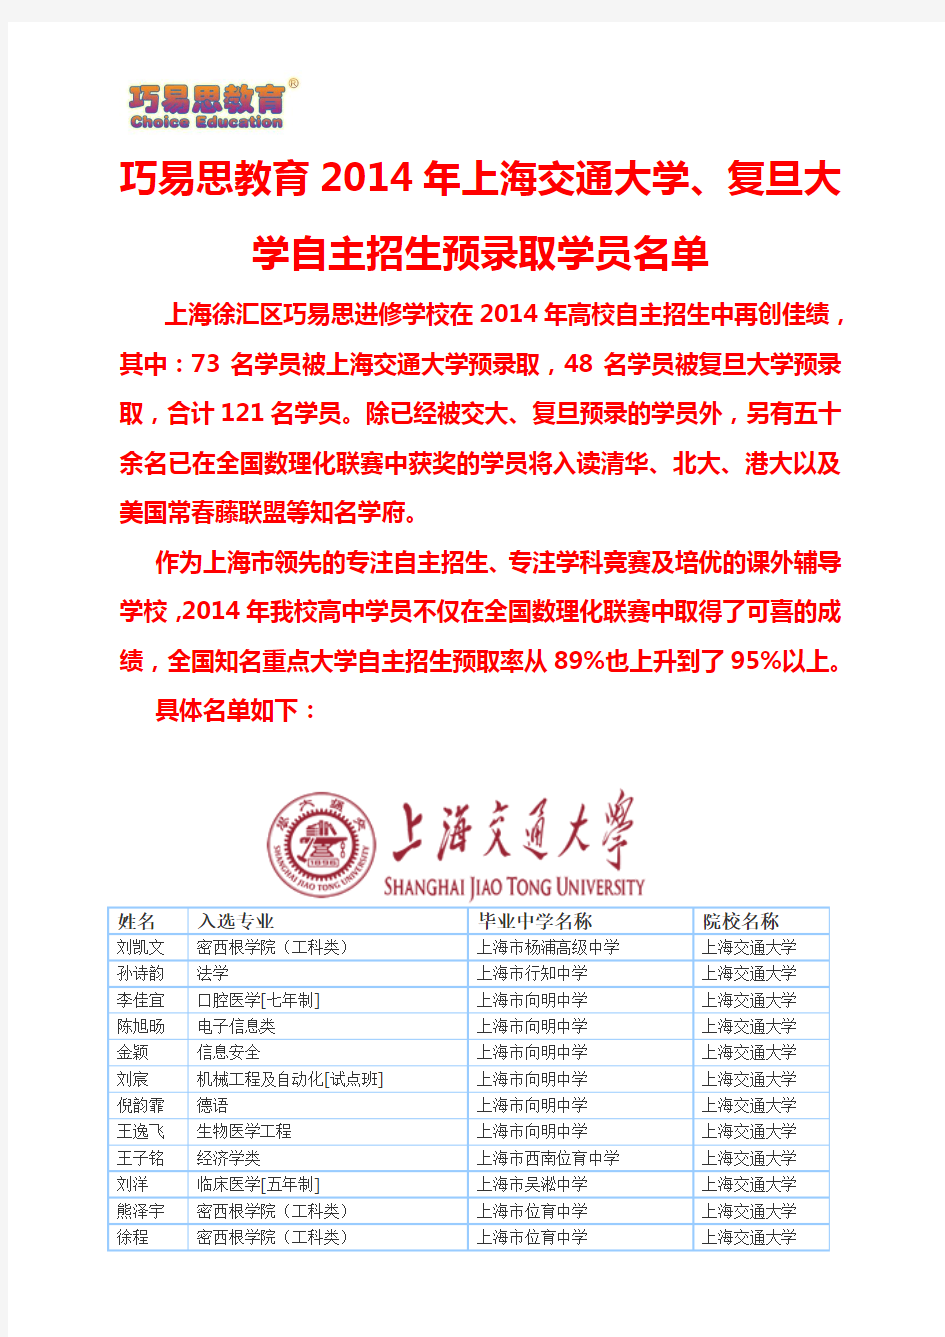 巧易思教育2014年上海交通大学、复旦大学自主招生预录取学员名单